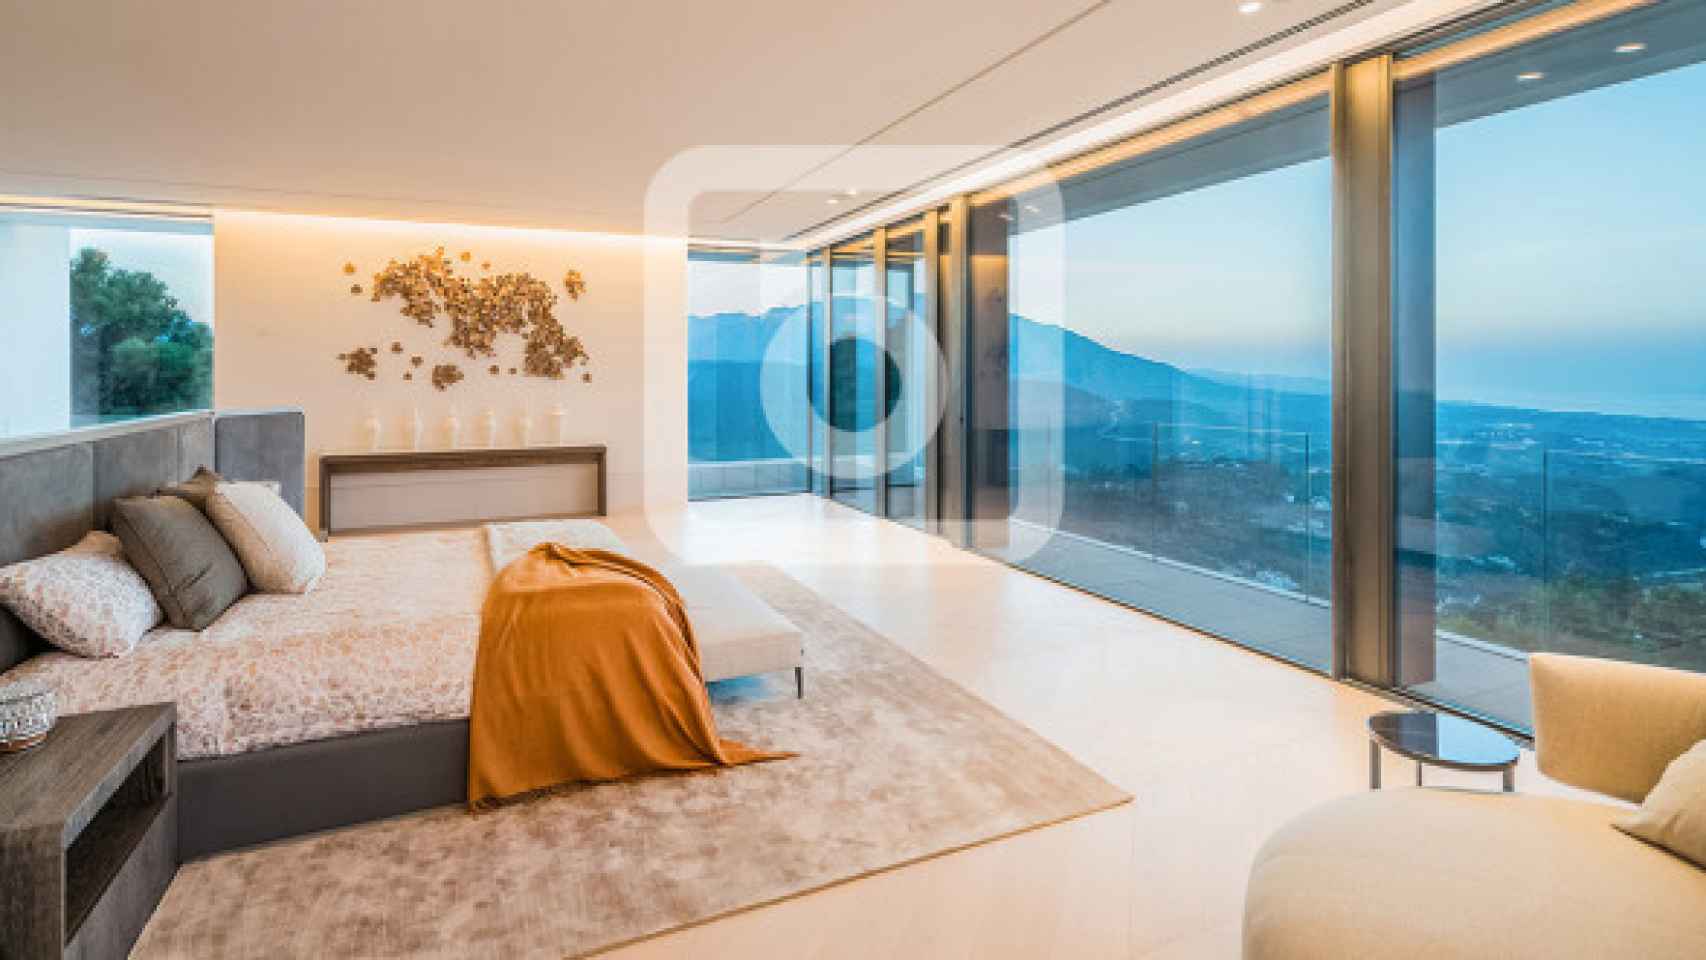 Uno de los dormitorios con vistas al mar Mediterráneo.